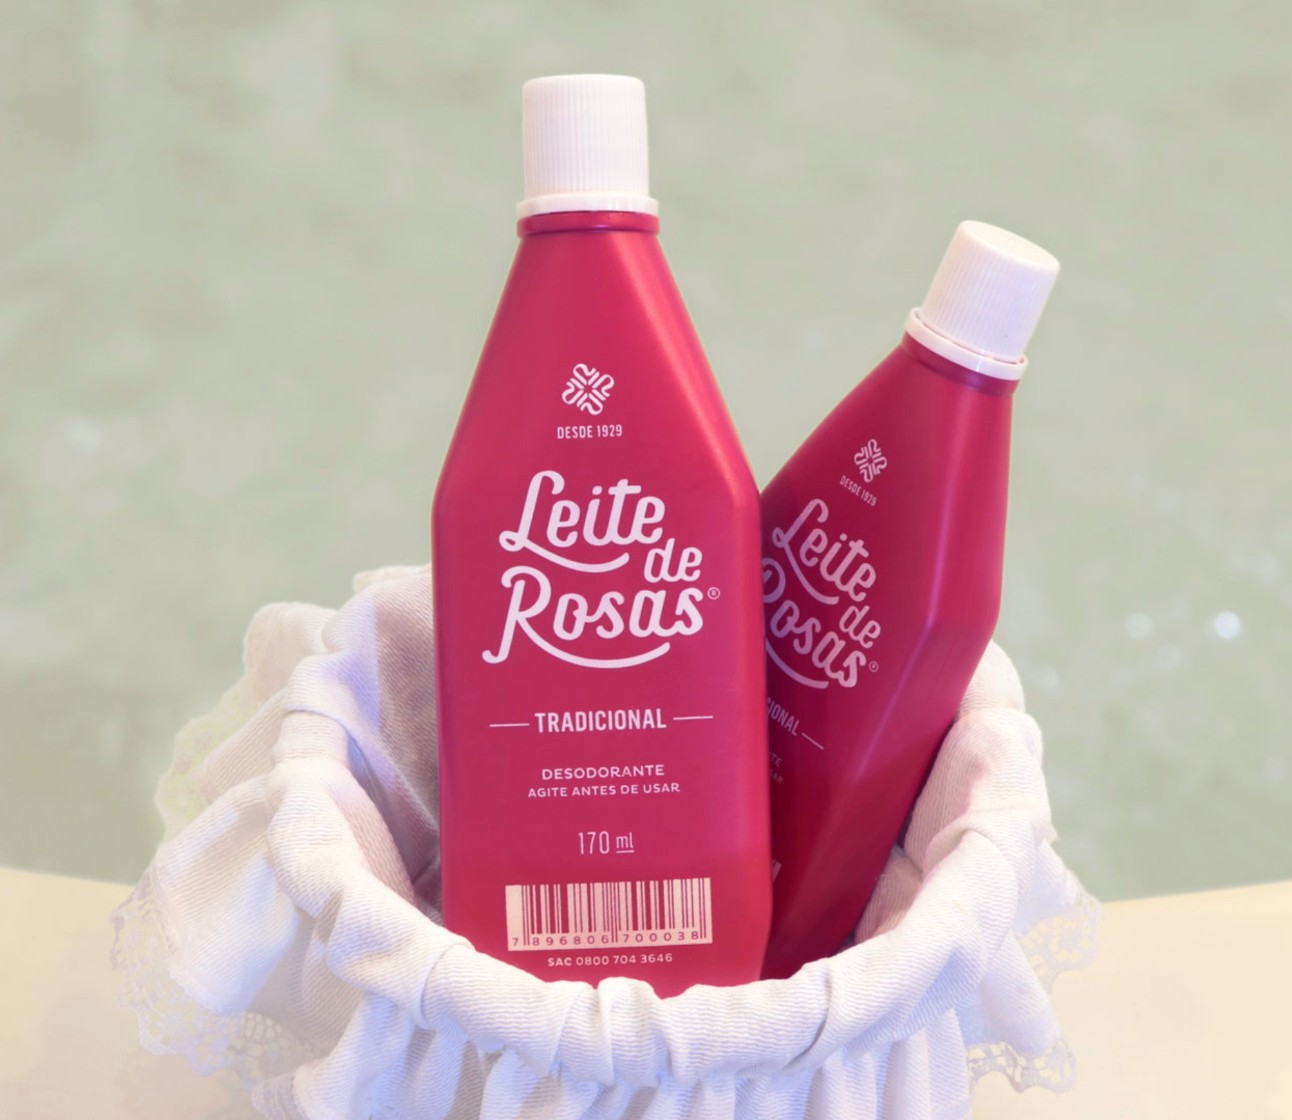 Duas embalagens de desodorante Leite de Rosas cor de rosa com tampas brancas